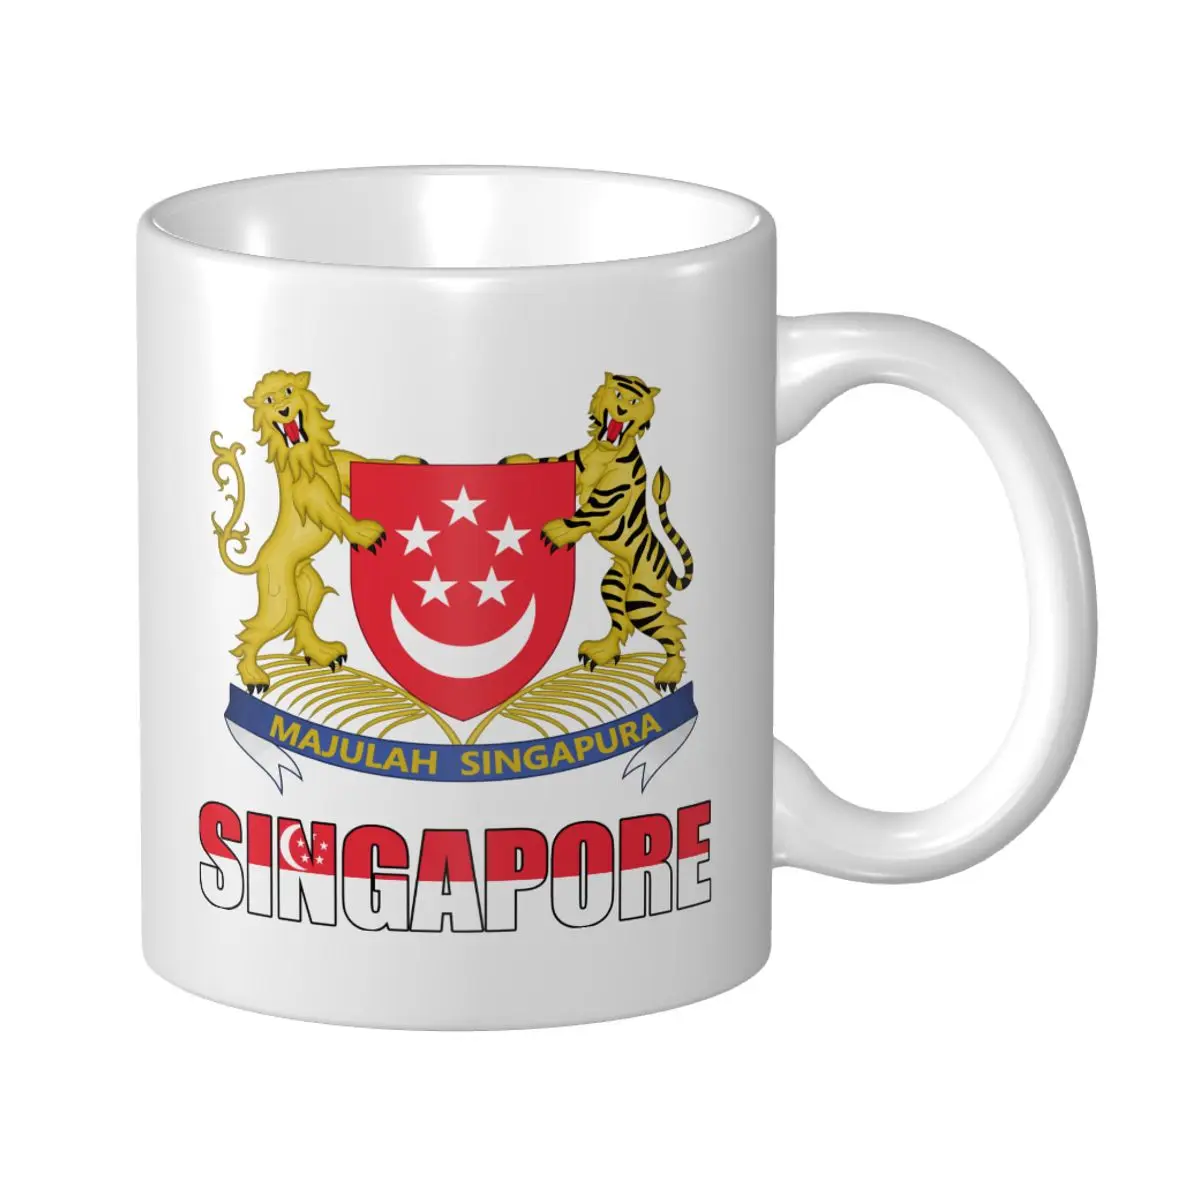 Mark Cup Кружка с надписью Флаг Сингапура Эмблема Кофейные кружки Чашка для чая молока Воды Дорожные кружки для офиса дома